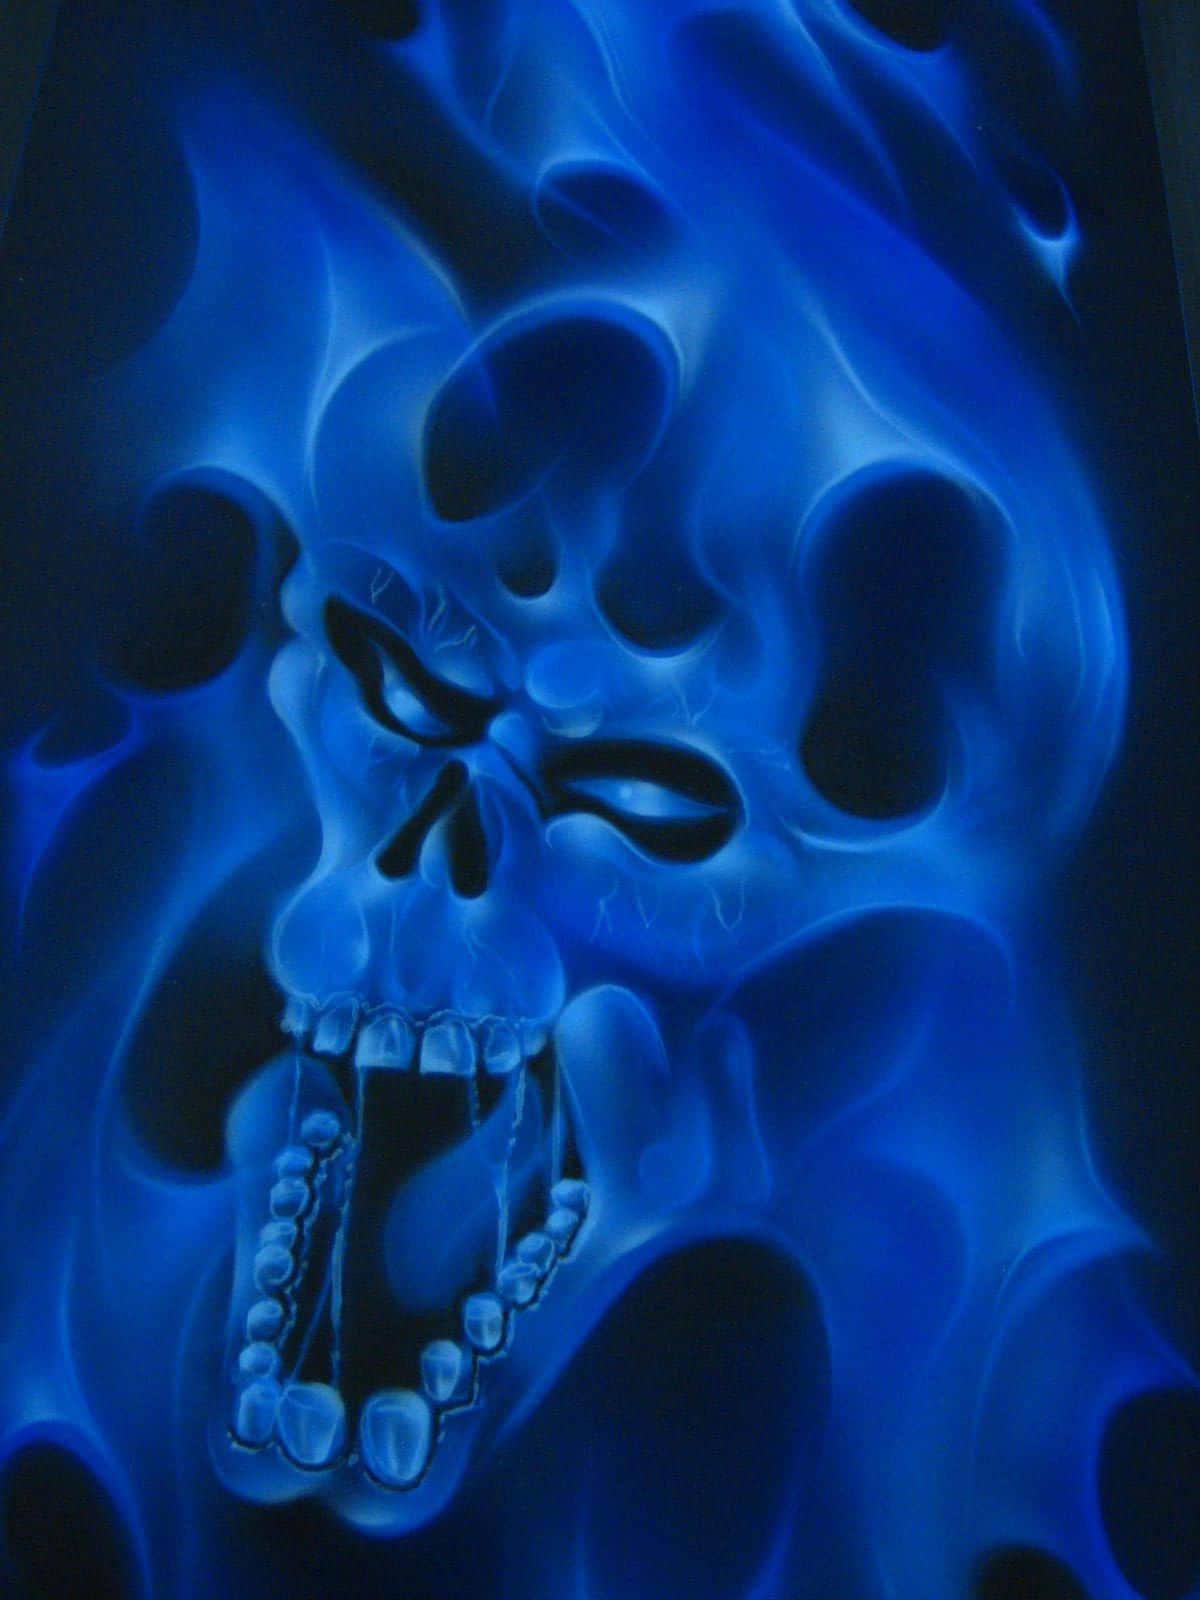 Blue Flame Skull Artwork Wallpaper